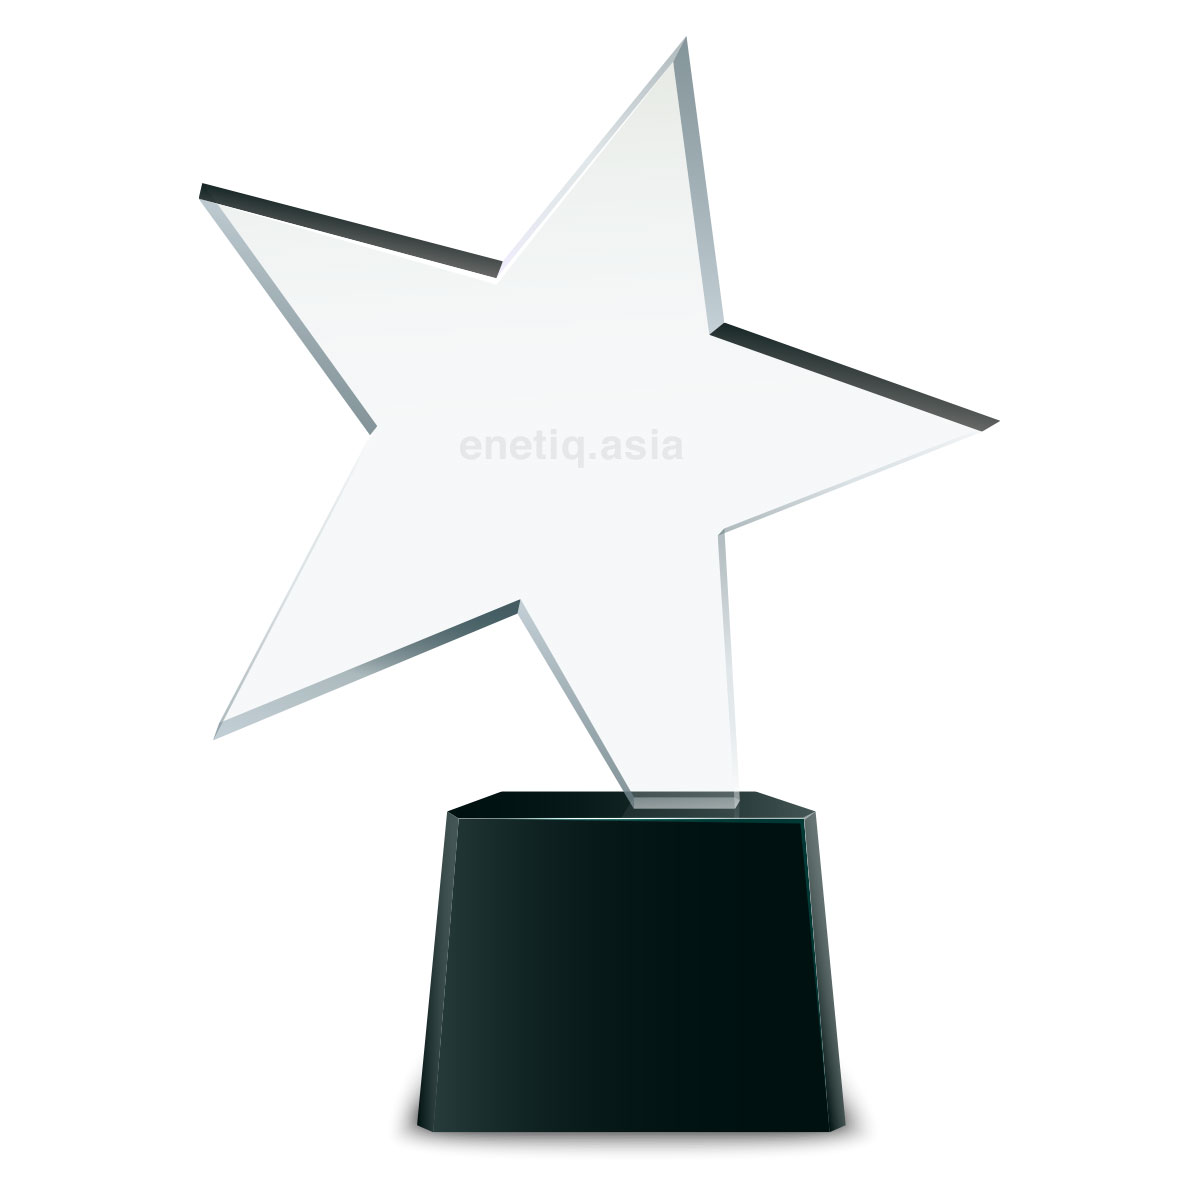 rising-star-crystal-award-trophy